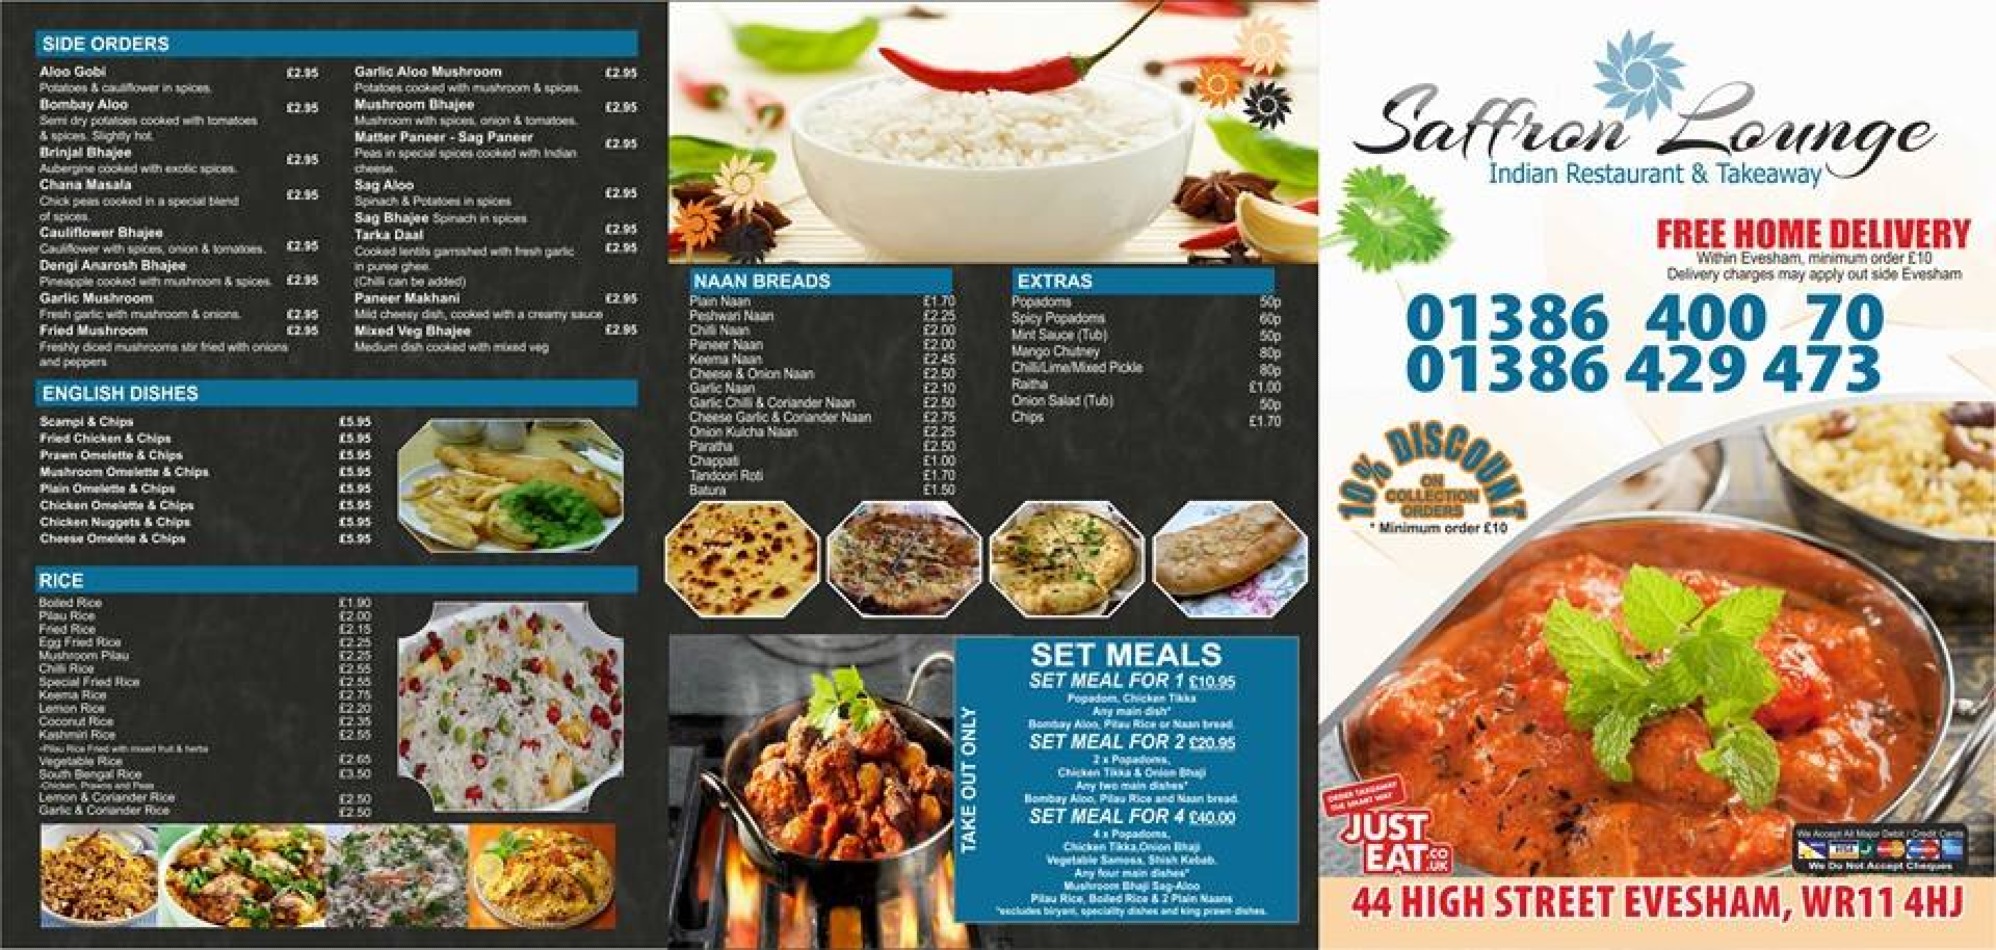 Takeaway Restaurant Menu Page - Saffron Lounge Indian Restaurant Evesham - Evesham